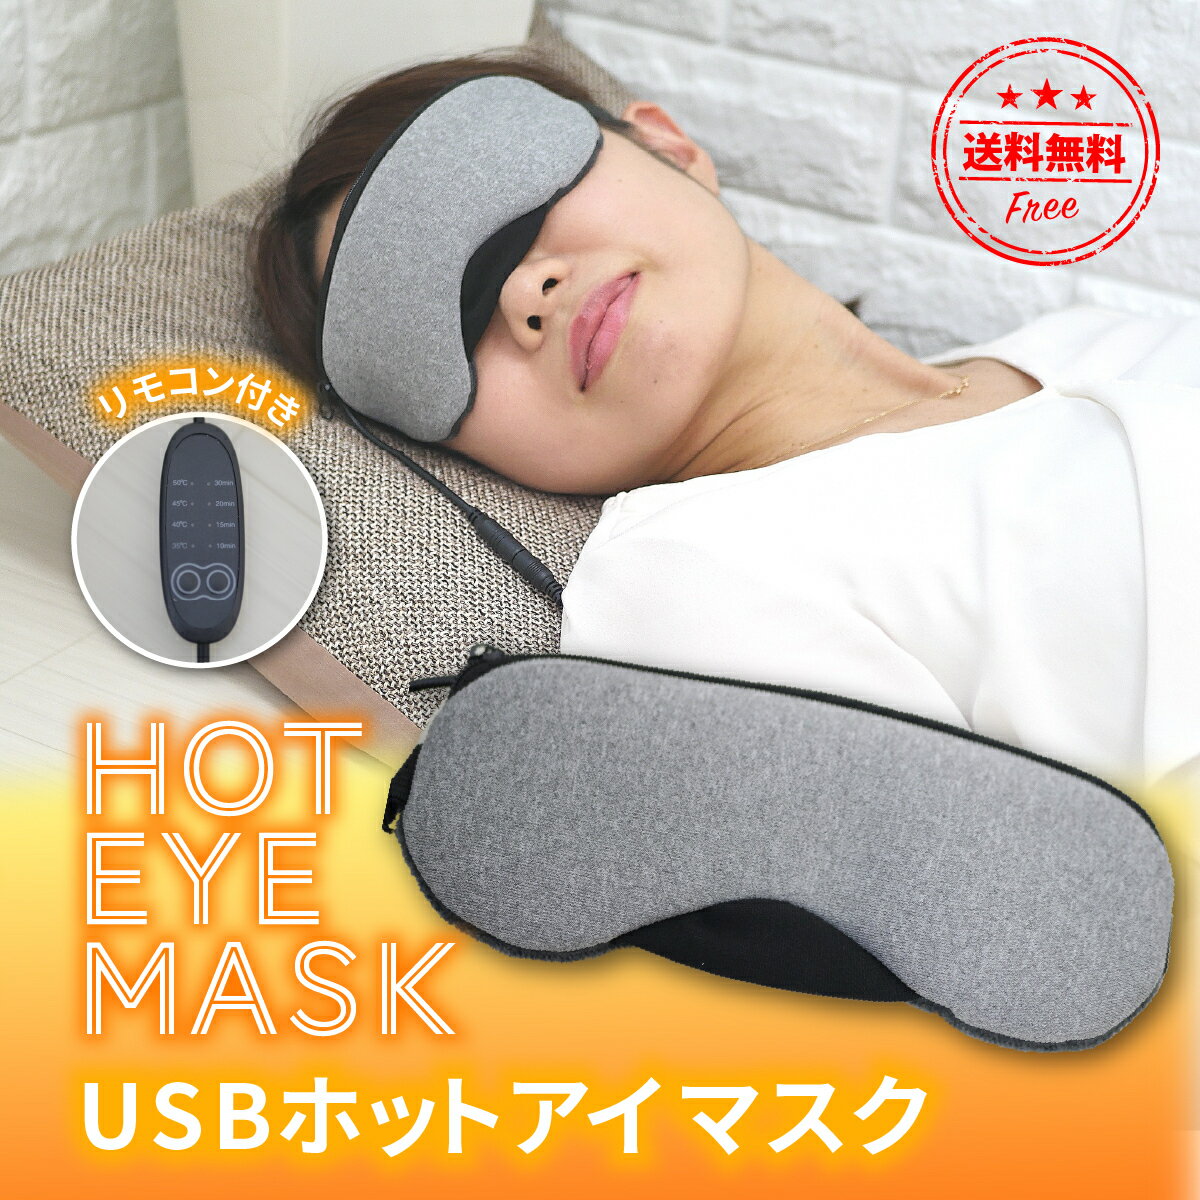 【送料無料】ホットアイマスク 充電 ホット アイマスク USB 電熱式ヒーター 疲れ緩和 睡眠改善 洗える 繰り返し使用 タイマー設定 温度調節 在宅 リラックス おうち時間 ギフト